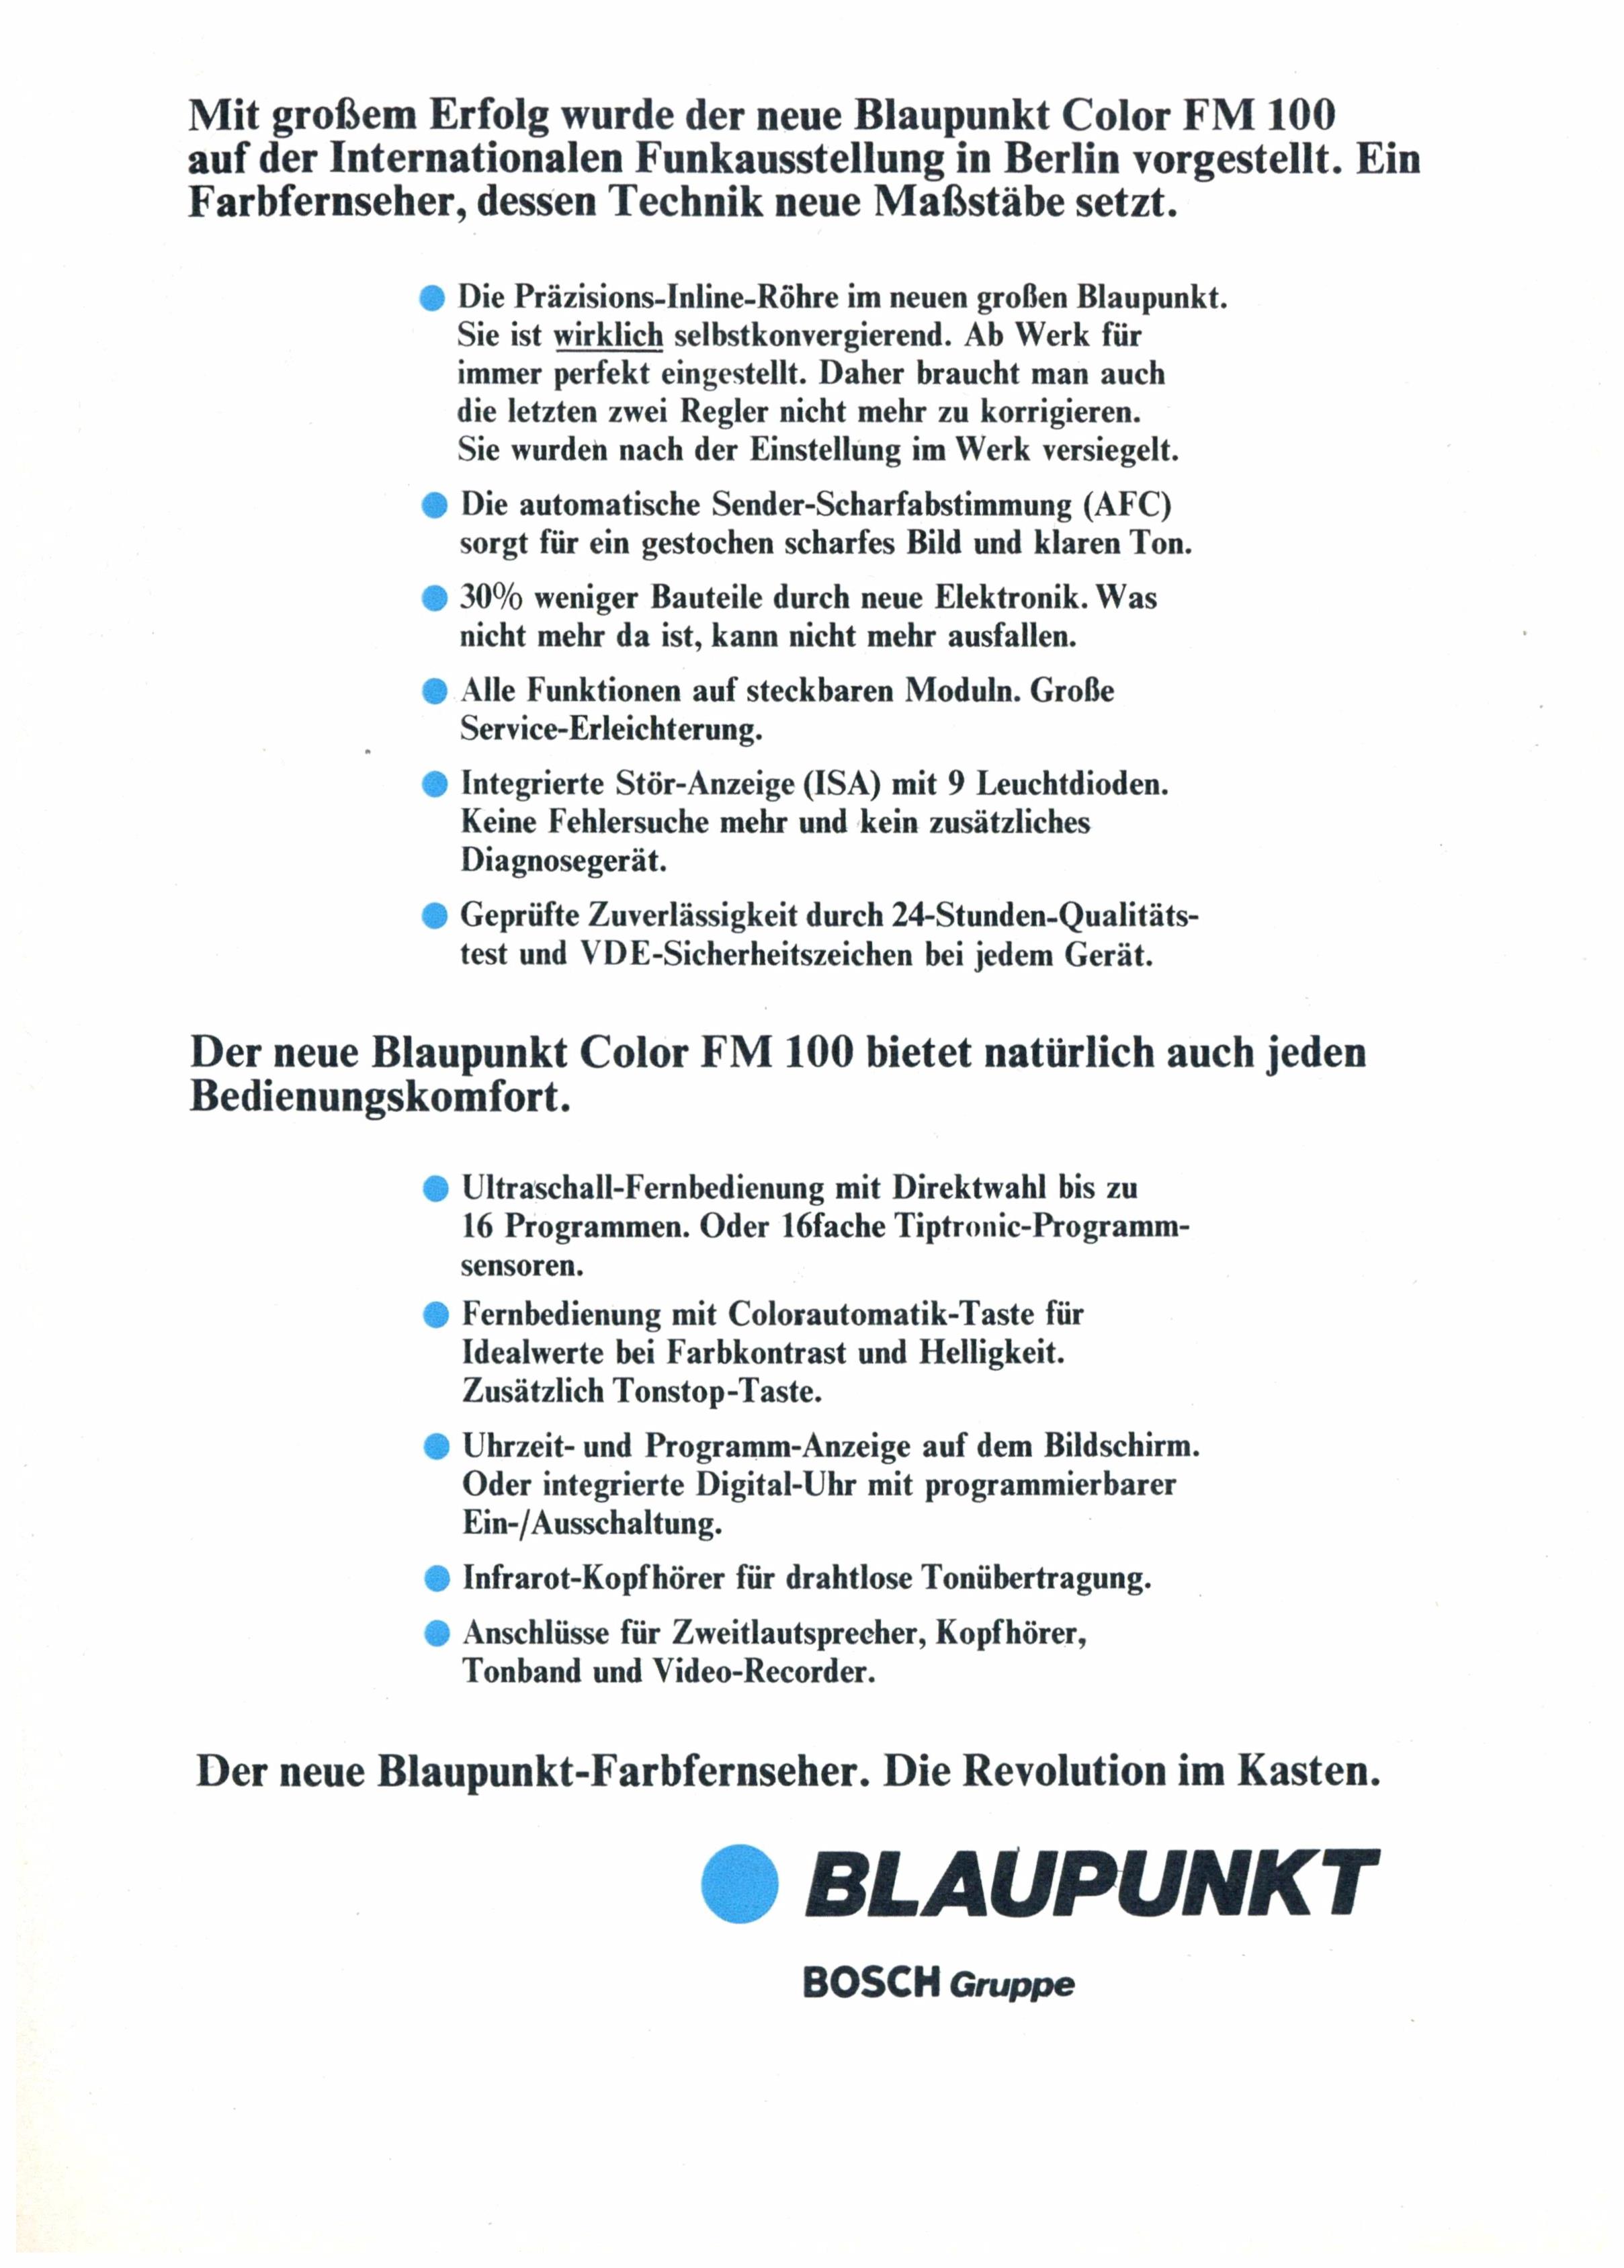 Blaupunkt  1975 1-2.jpg